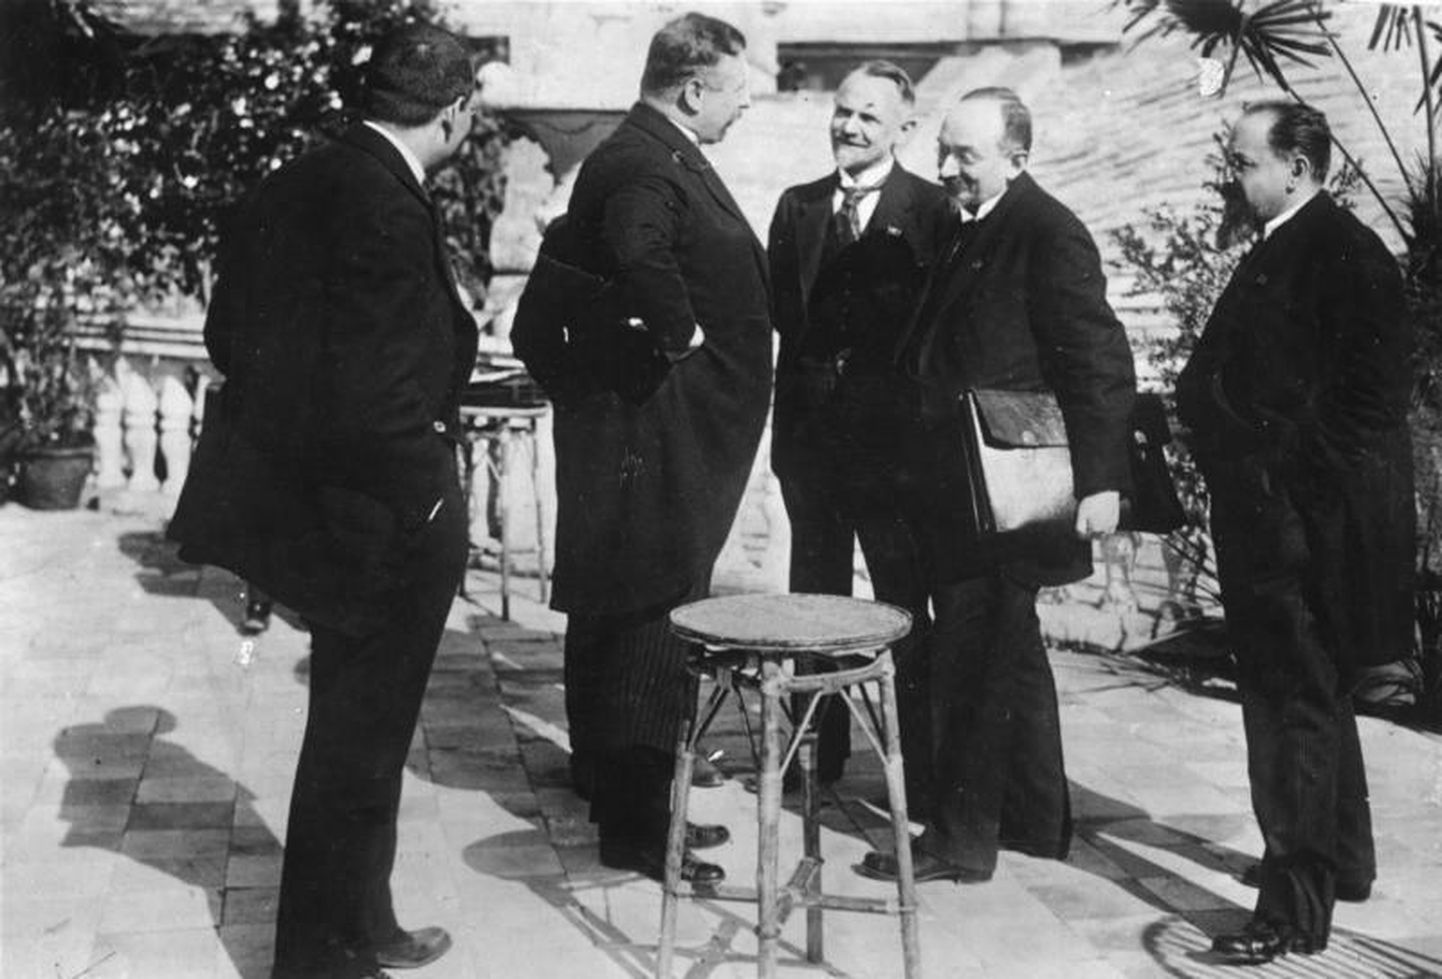 Saksamaa kantsler Joseph Wirth (vasakult teine) ja Nõukogude Venemaa välisasjade rahvakomissar Georgi Tšitšerin (paremalt teine) Rapallos 1922. aasta aprillis. Nõukogude Venemaa delegatsiooni kuulus ka Nõukogude Venemaa poolt Tartu rahulepingule alla kirjutanud Adolf Joffe (paremalt esimene).